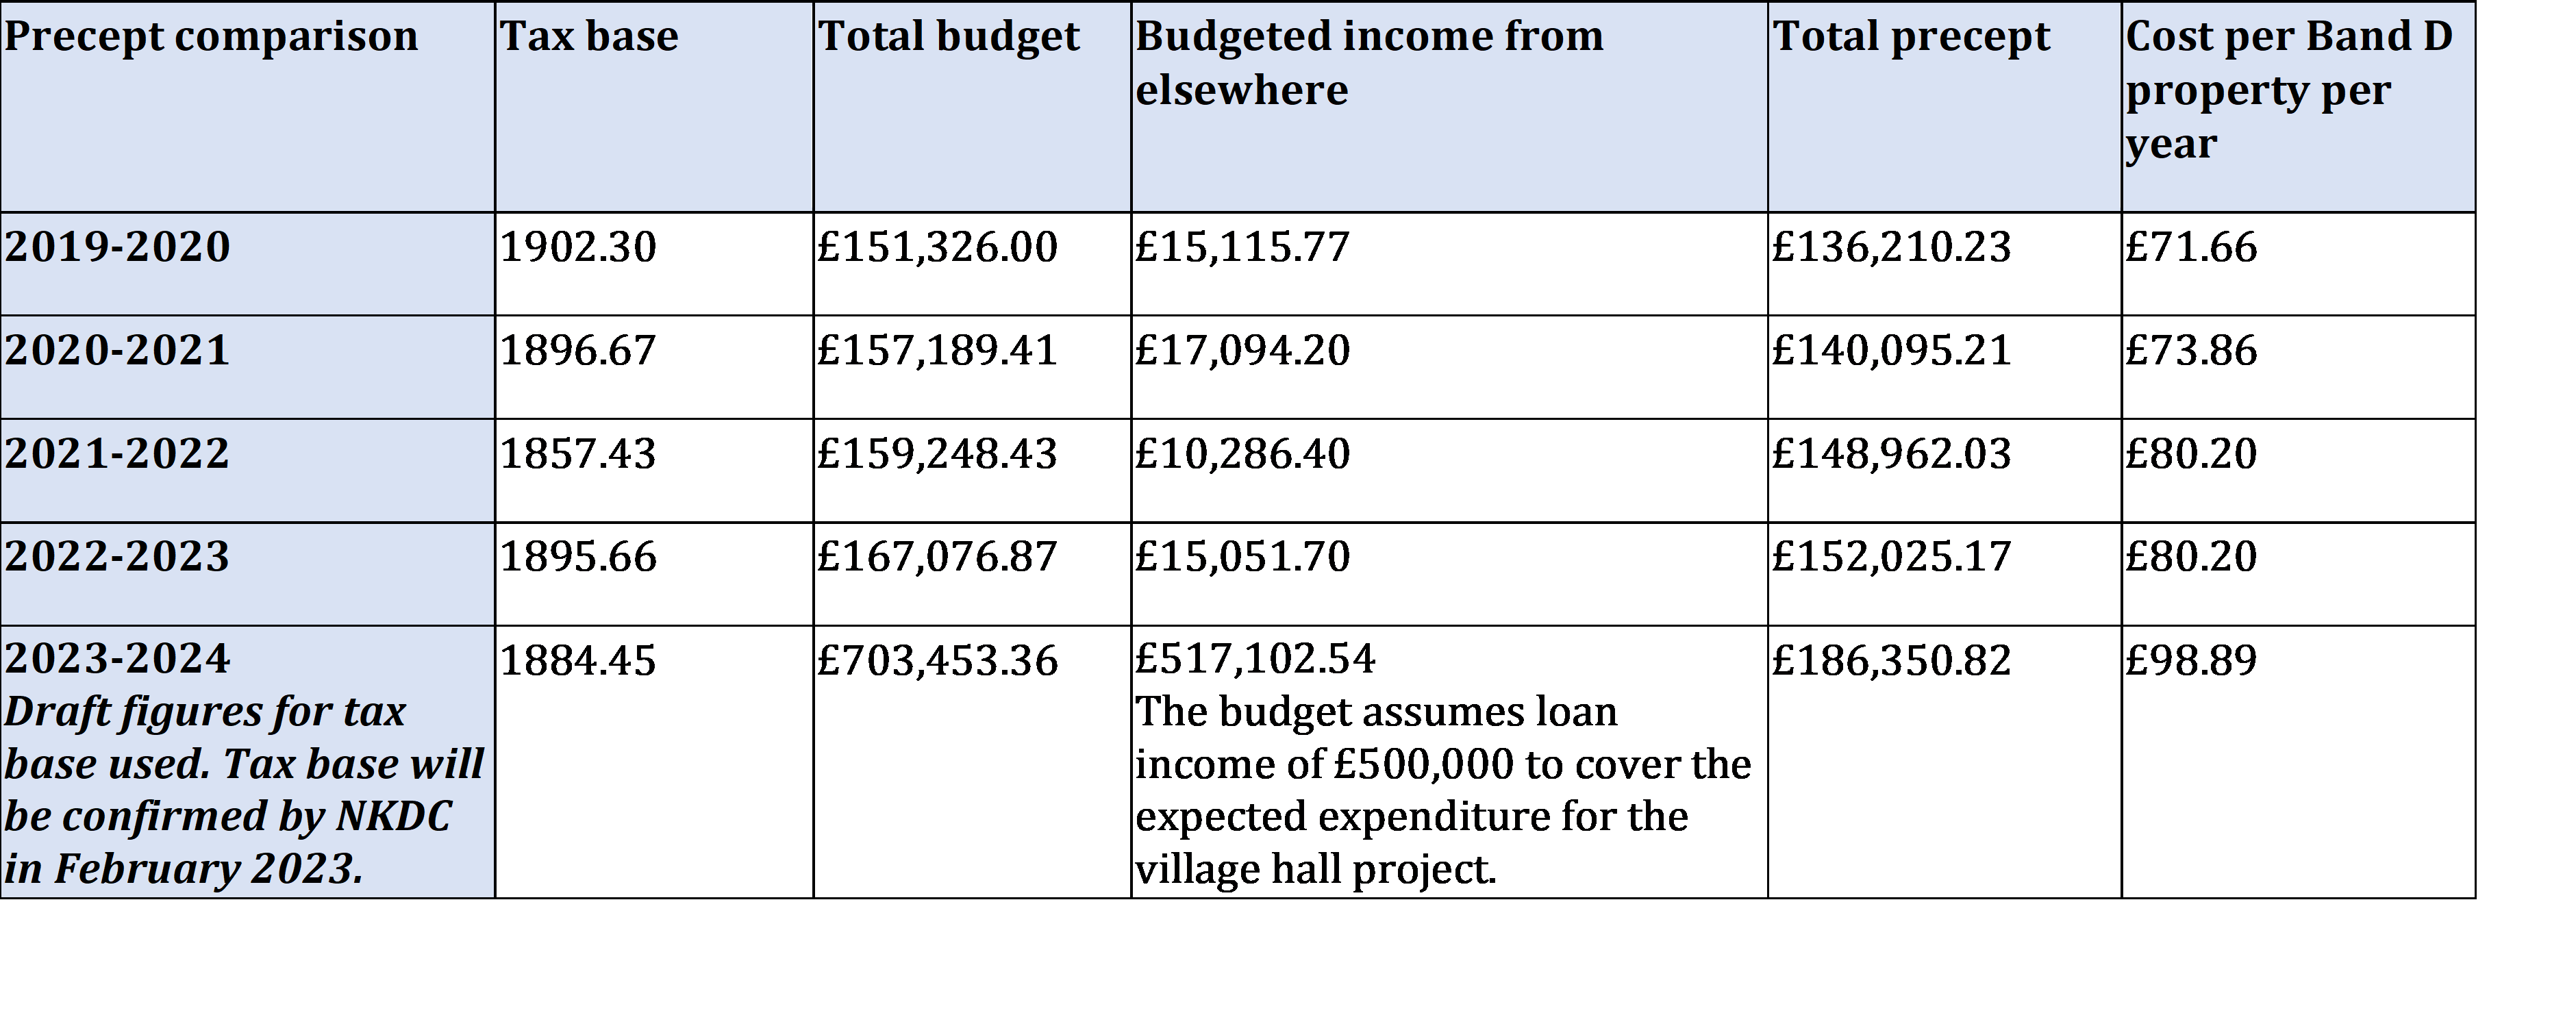 Comparison of budget and precept 2019-2024